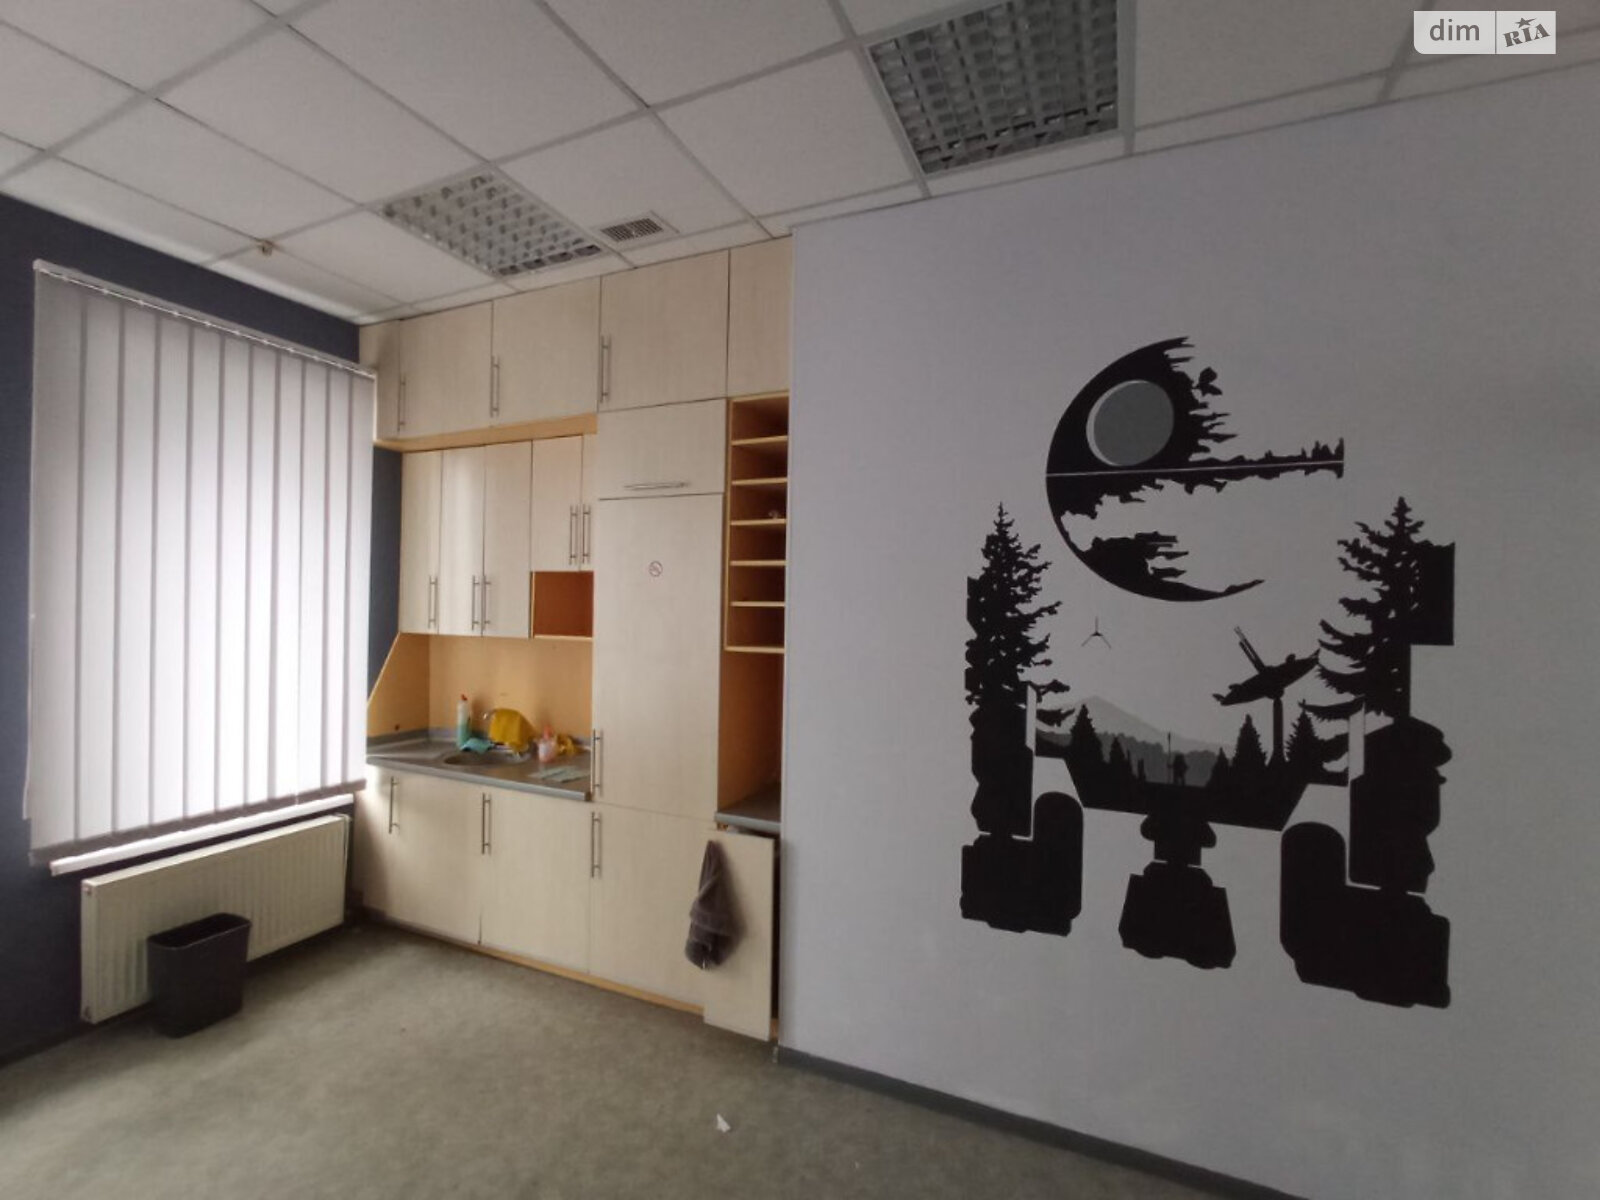 Офисное помещение на 317 кв.м. в Харькове фото 1